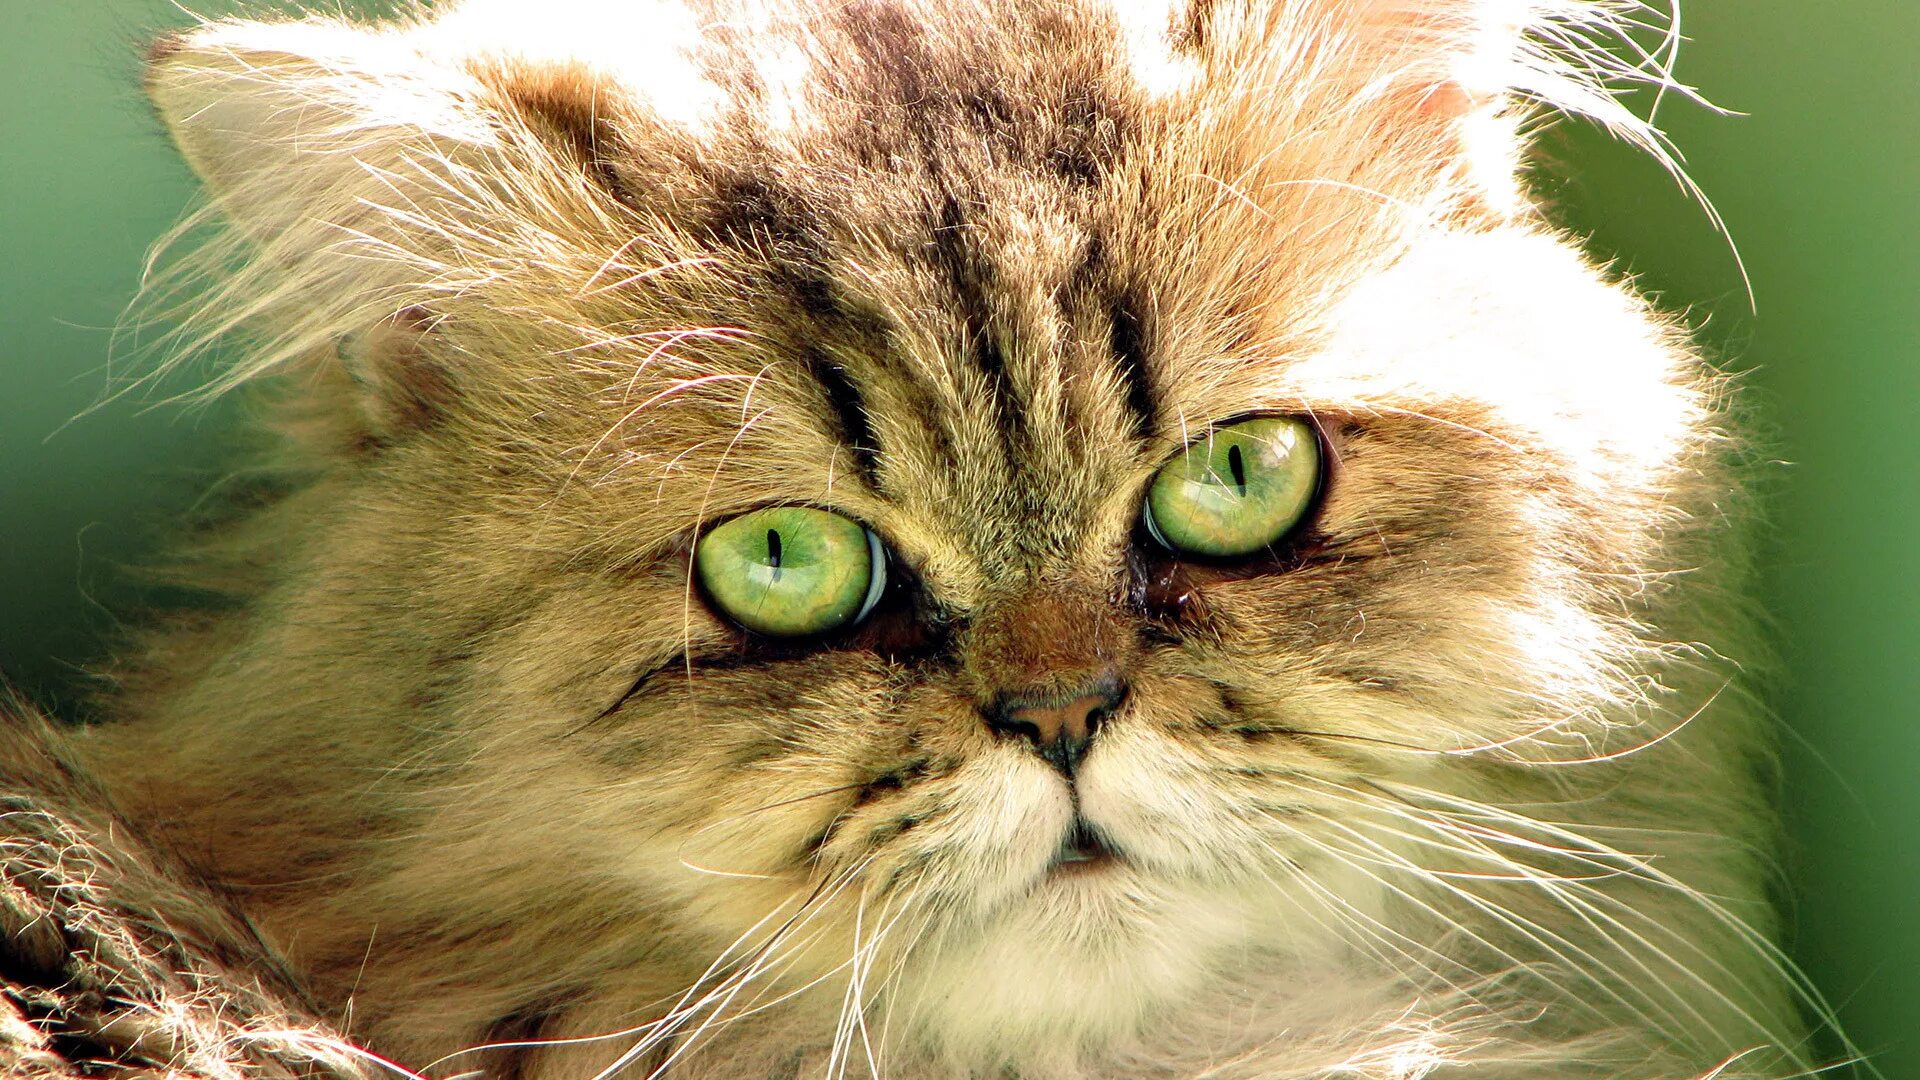 Обои на телефон красивых котиков. Обои с котиками. Красивые кошки. Кошка с зелеными глазами. Красивый кот.